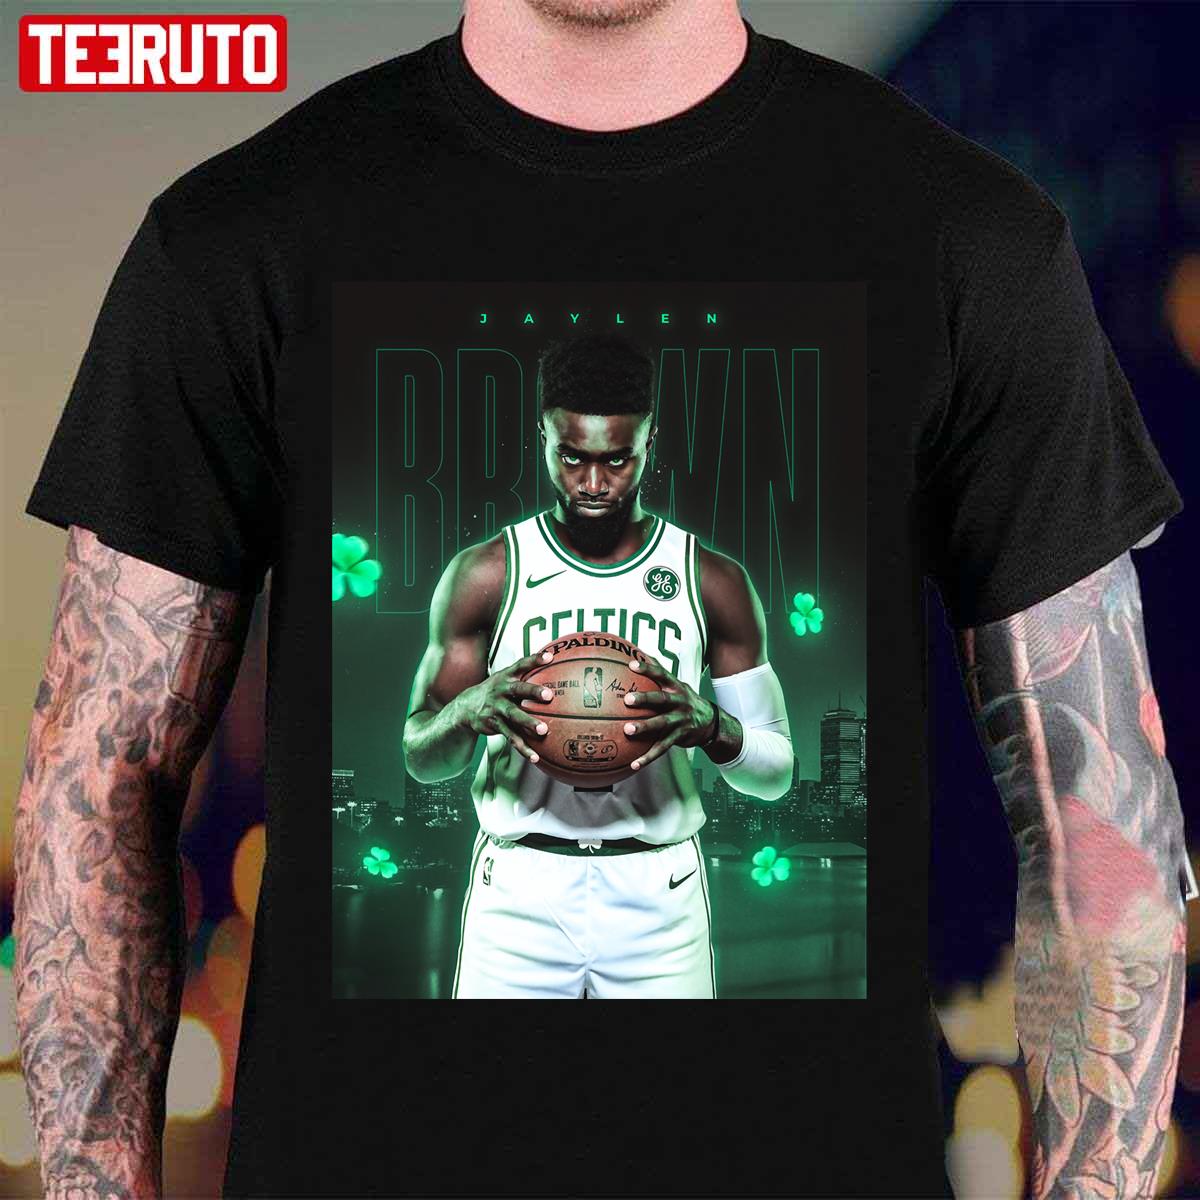 Jaylen Brown 7 Basketball Unisex T-Shirt